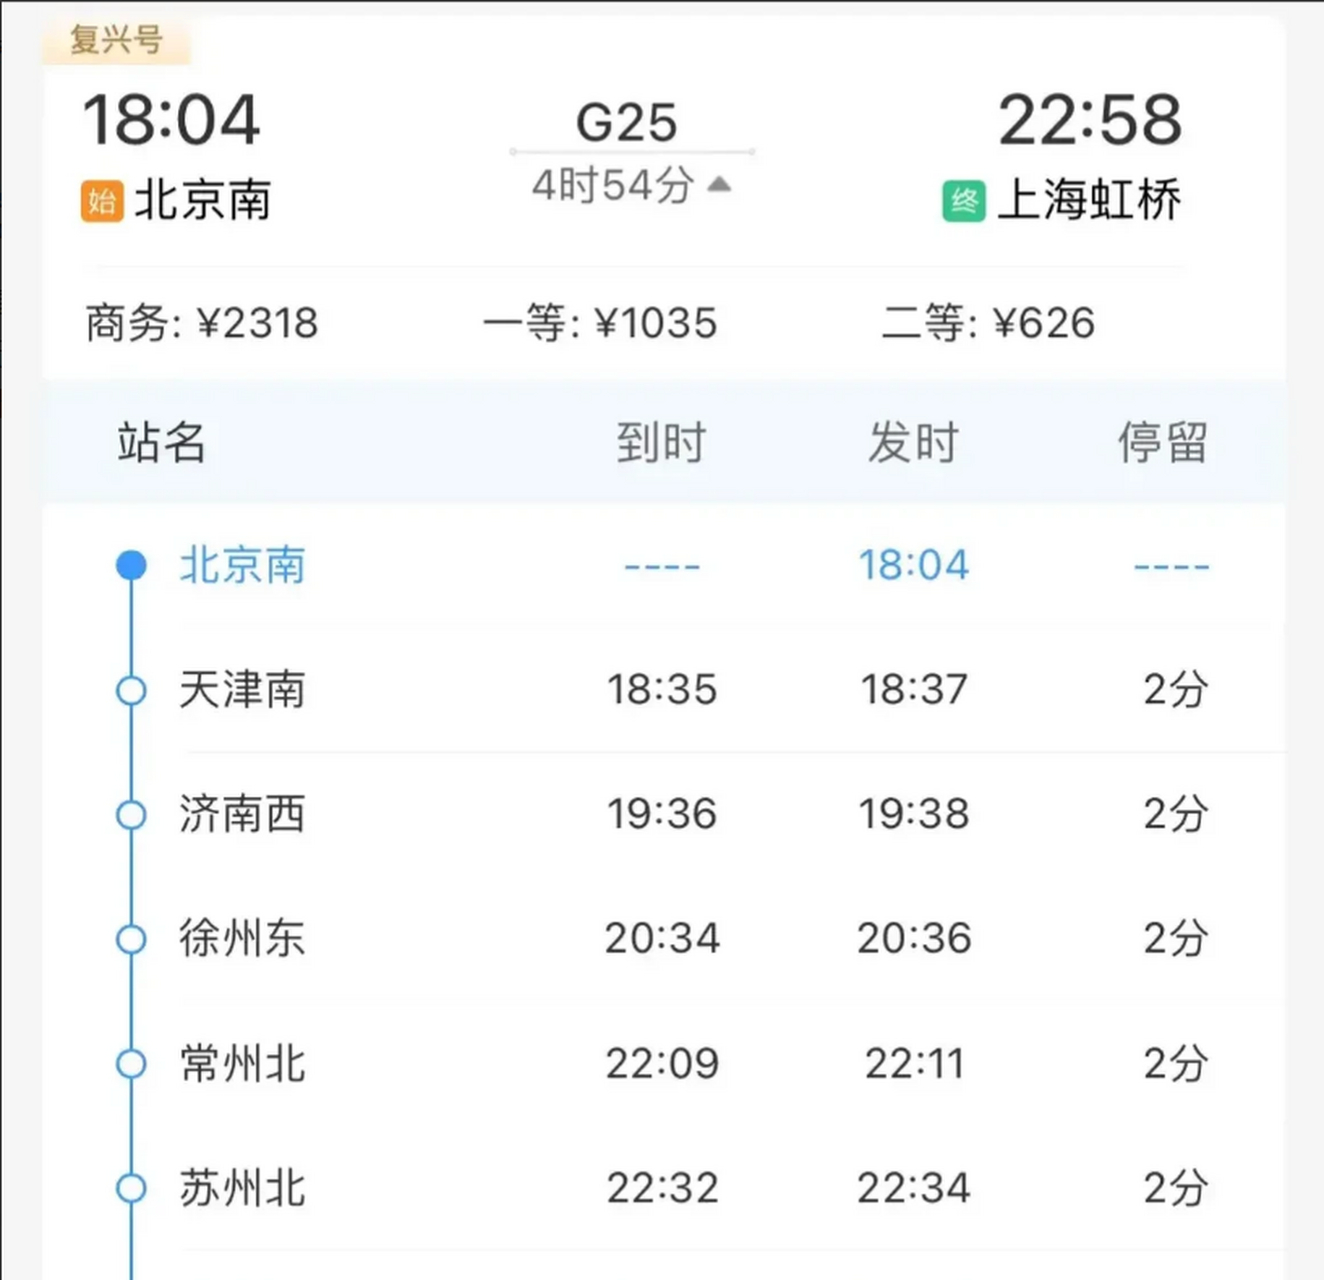 话说京沪标杆高铁都不敢跨越南京南站,这趟g25却神一般的从徐州直接到